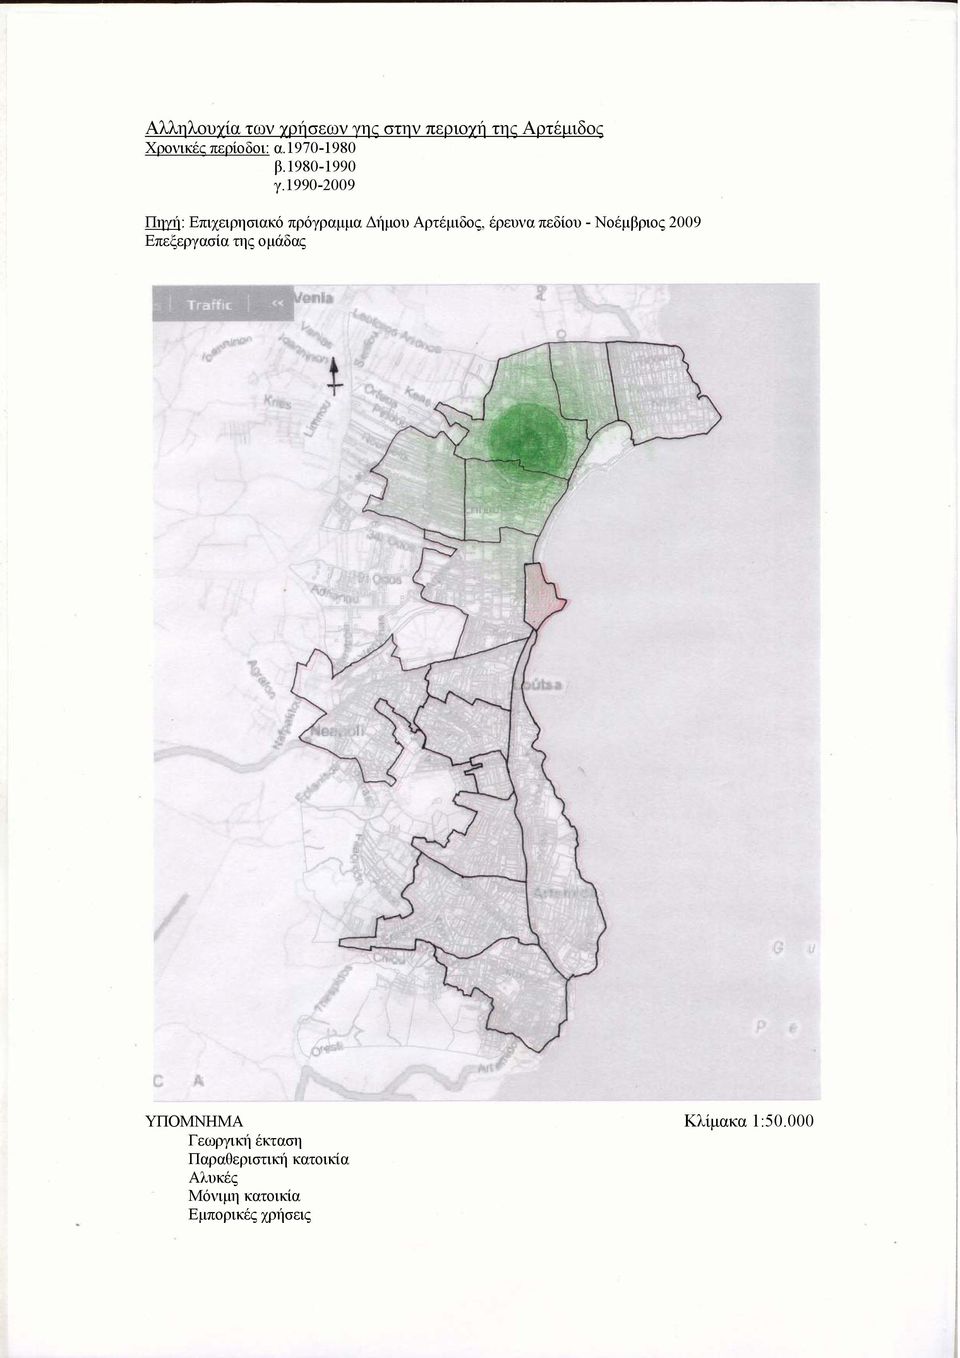 1990-2009 Πηγή: Επιχειρησιακό πρόγραμμα Δήμου Αρτέμιδος, έρευνα πεδίου -